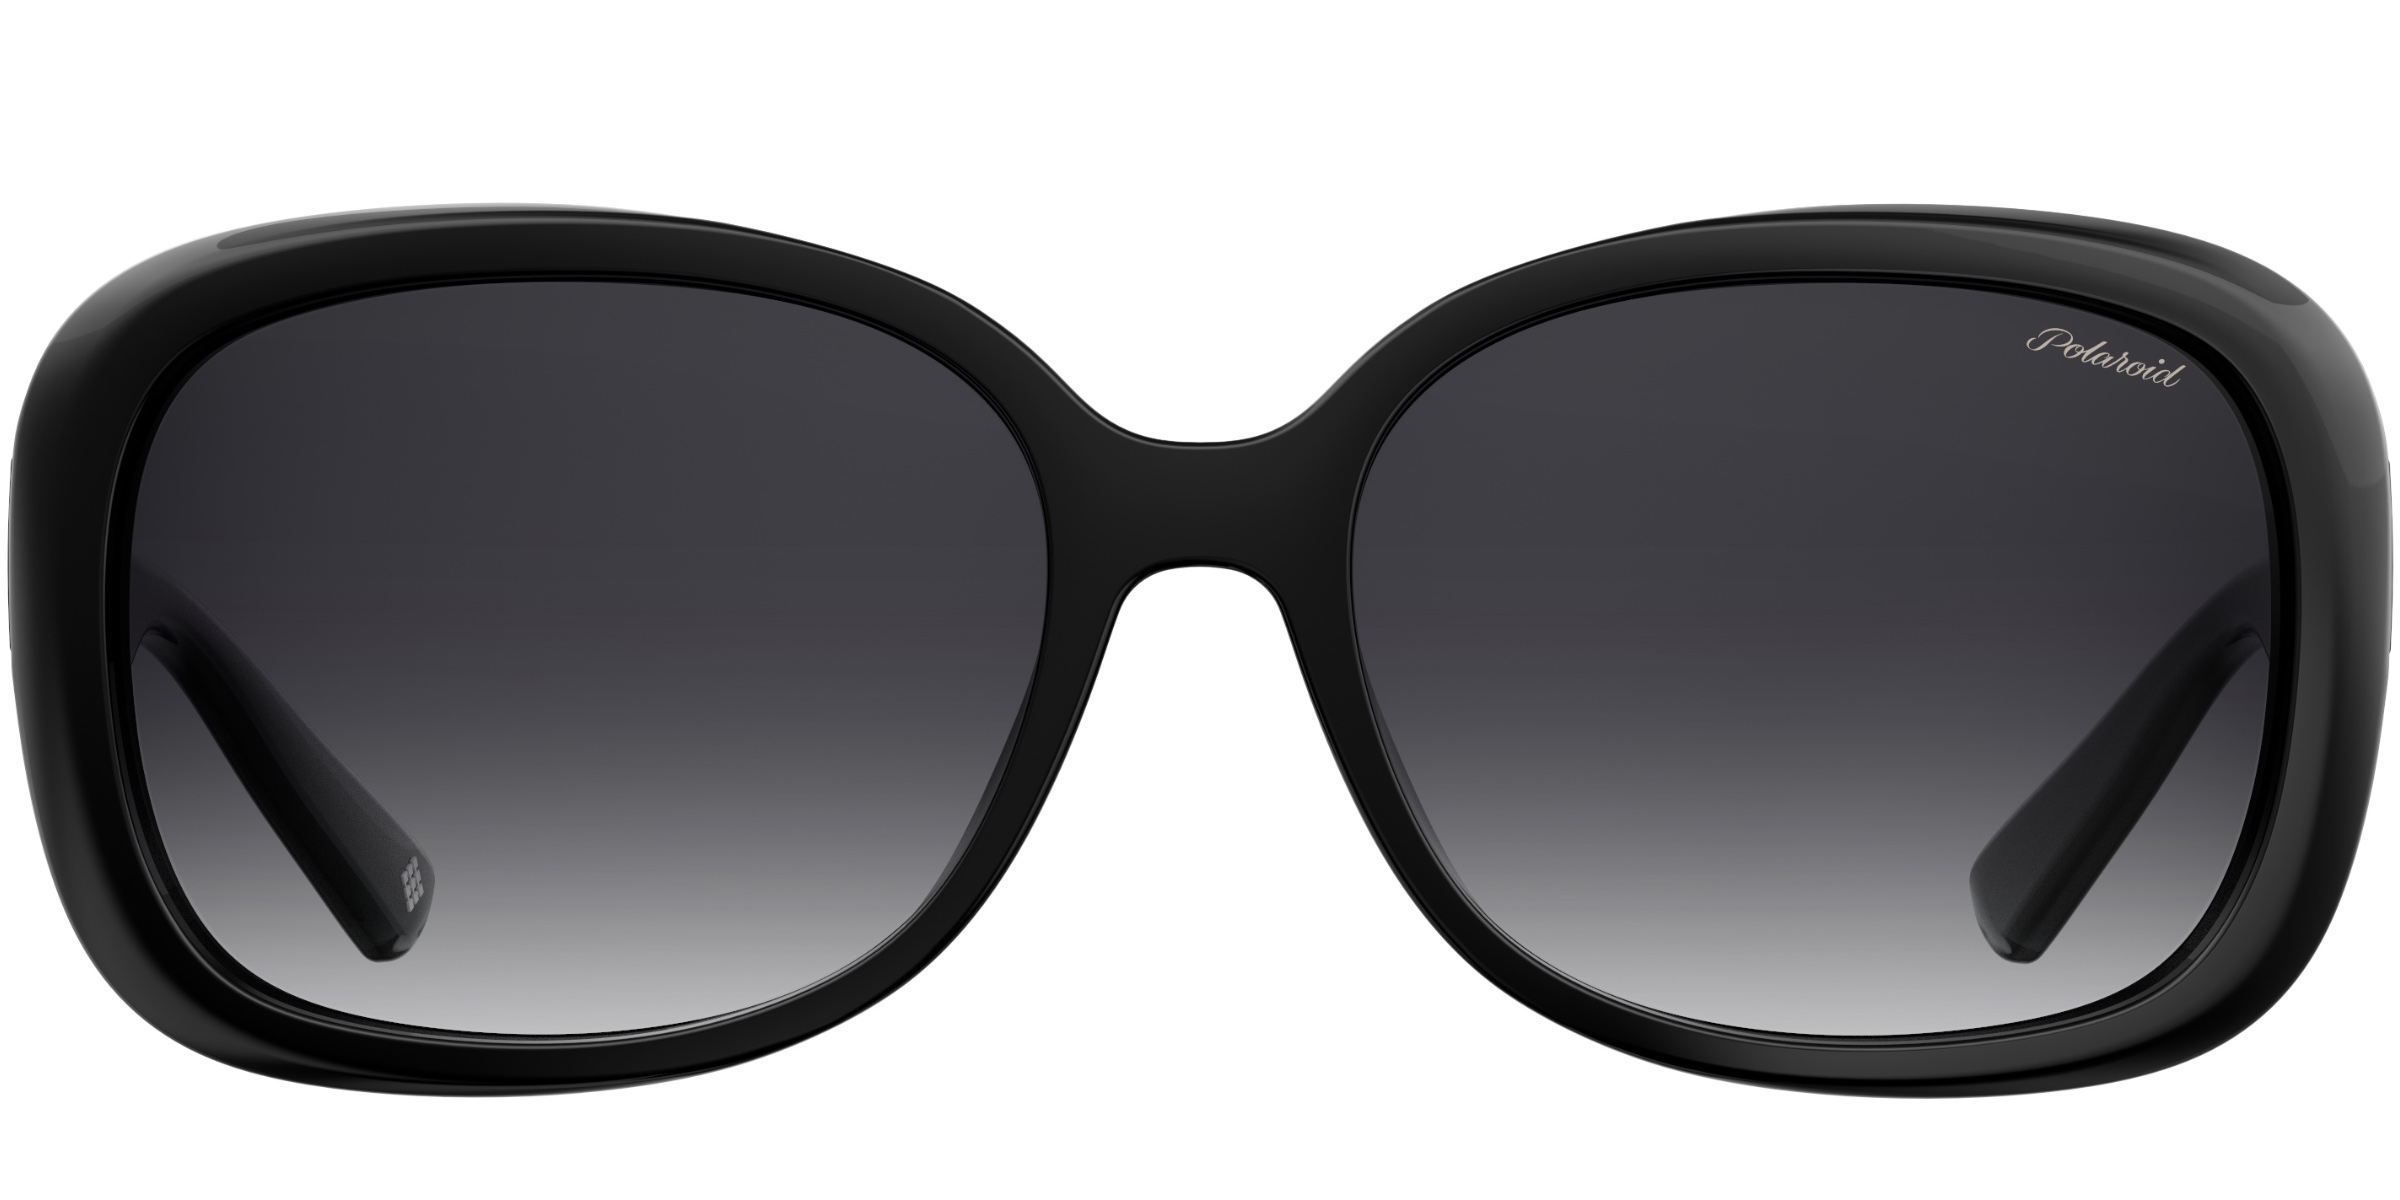 Buy Polaroid PLD 4069 sunglasses for women at For Eyes